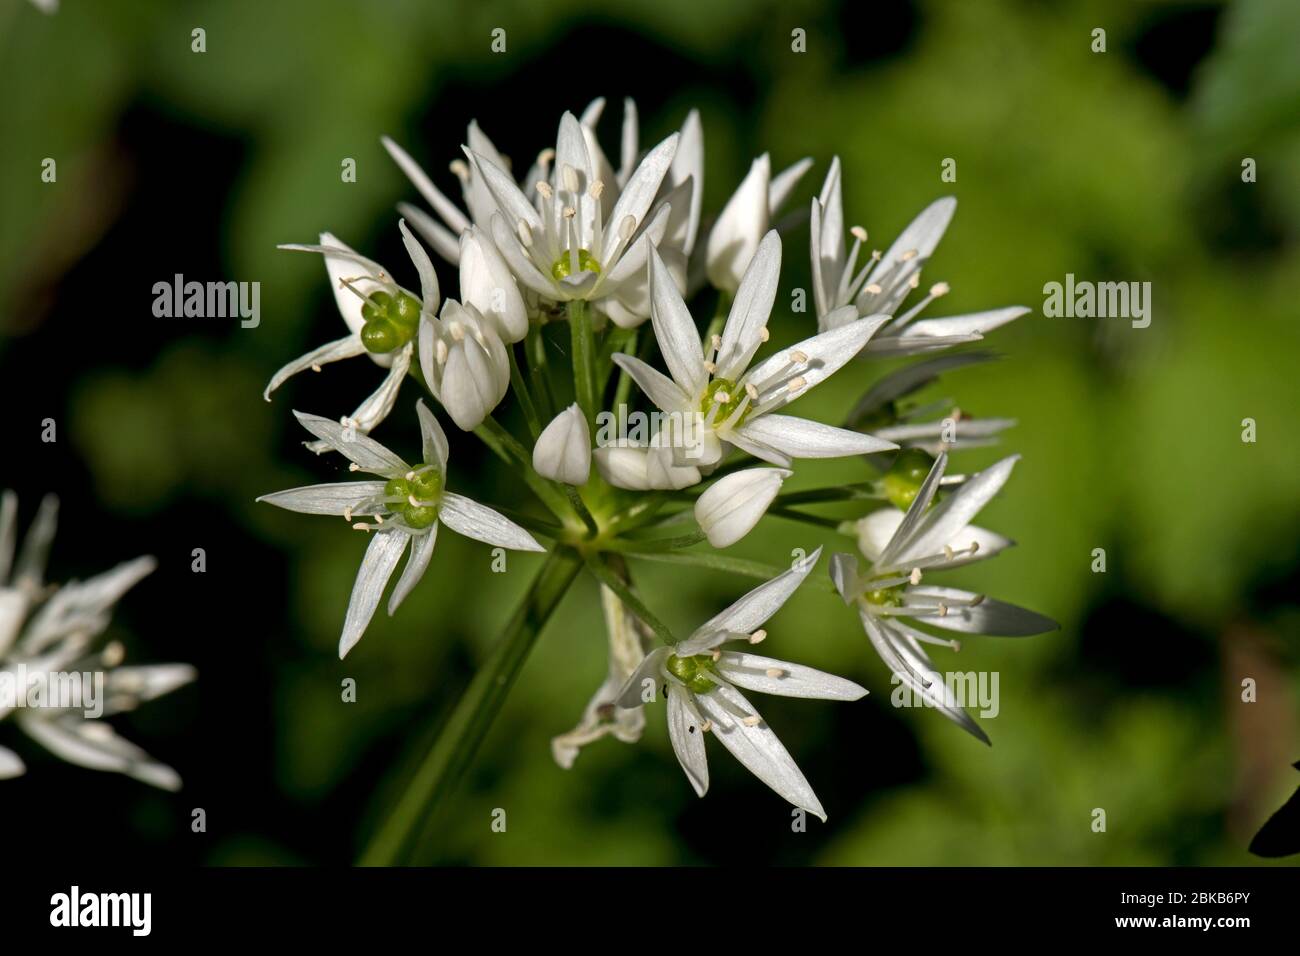 Bärlauch oder Ramsons (Allium ursinum) weiße Blüten einer Waldpflanze mit essbaren Blättern in der Küche verwendet, Berkshire, April Stockfoto